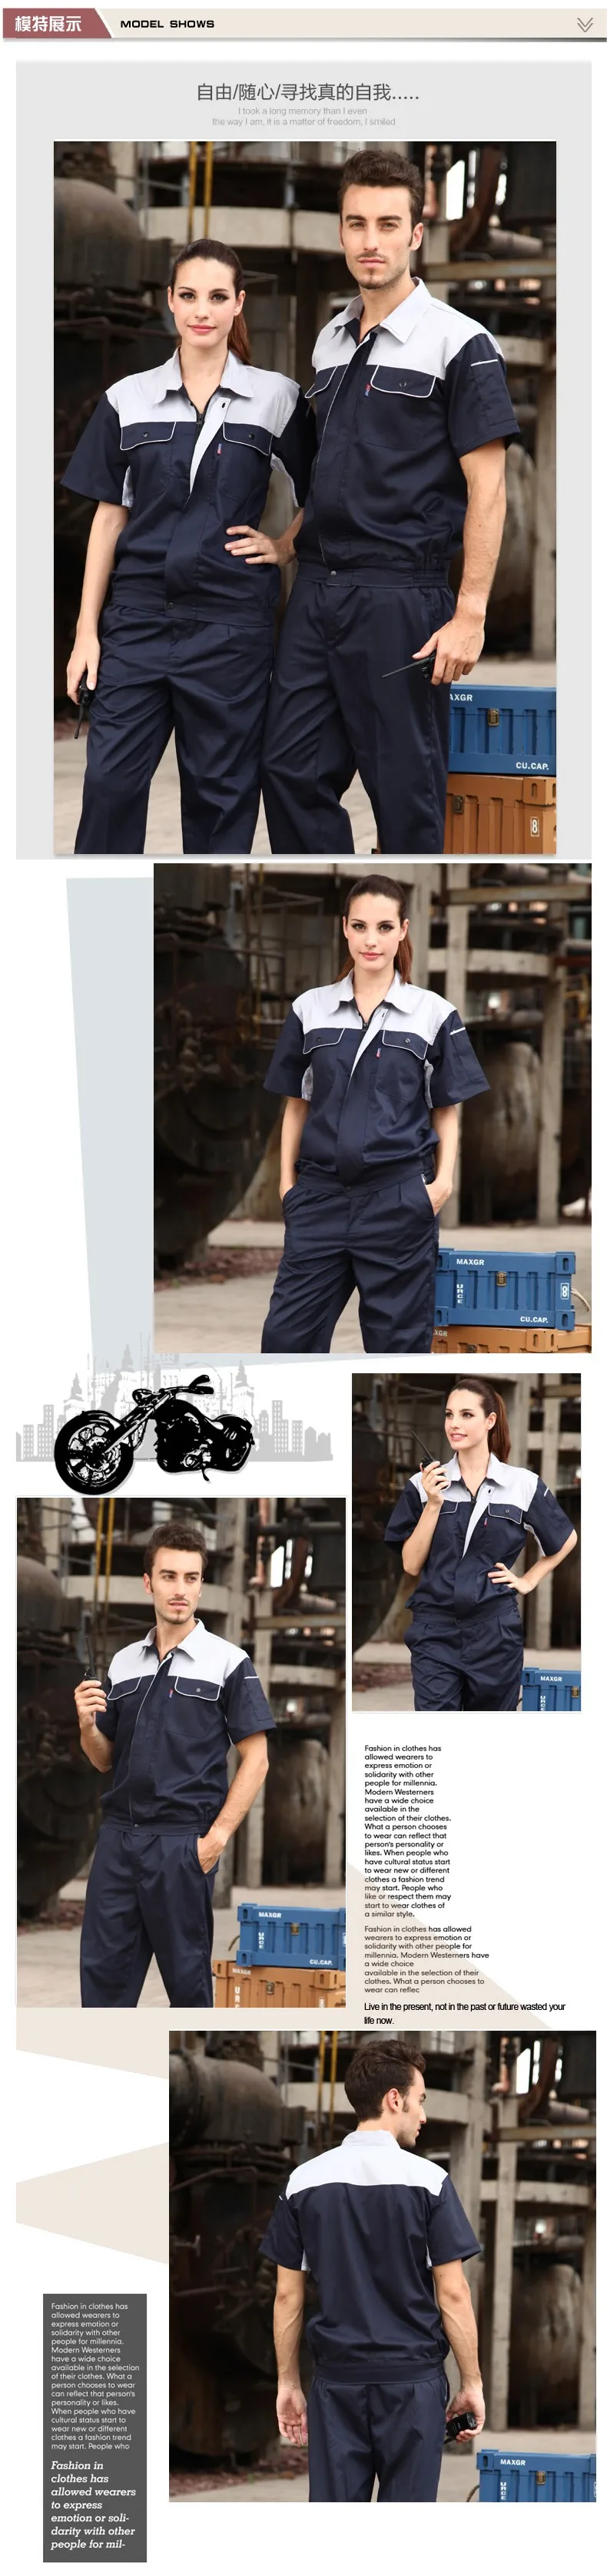 (10 комплектов-рубашка и штаны) рабочая одежда для рабочих АЗС комбинезоны унисекс рабочая одежда 4S автомобильный магазин персонал Униформа